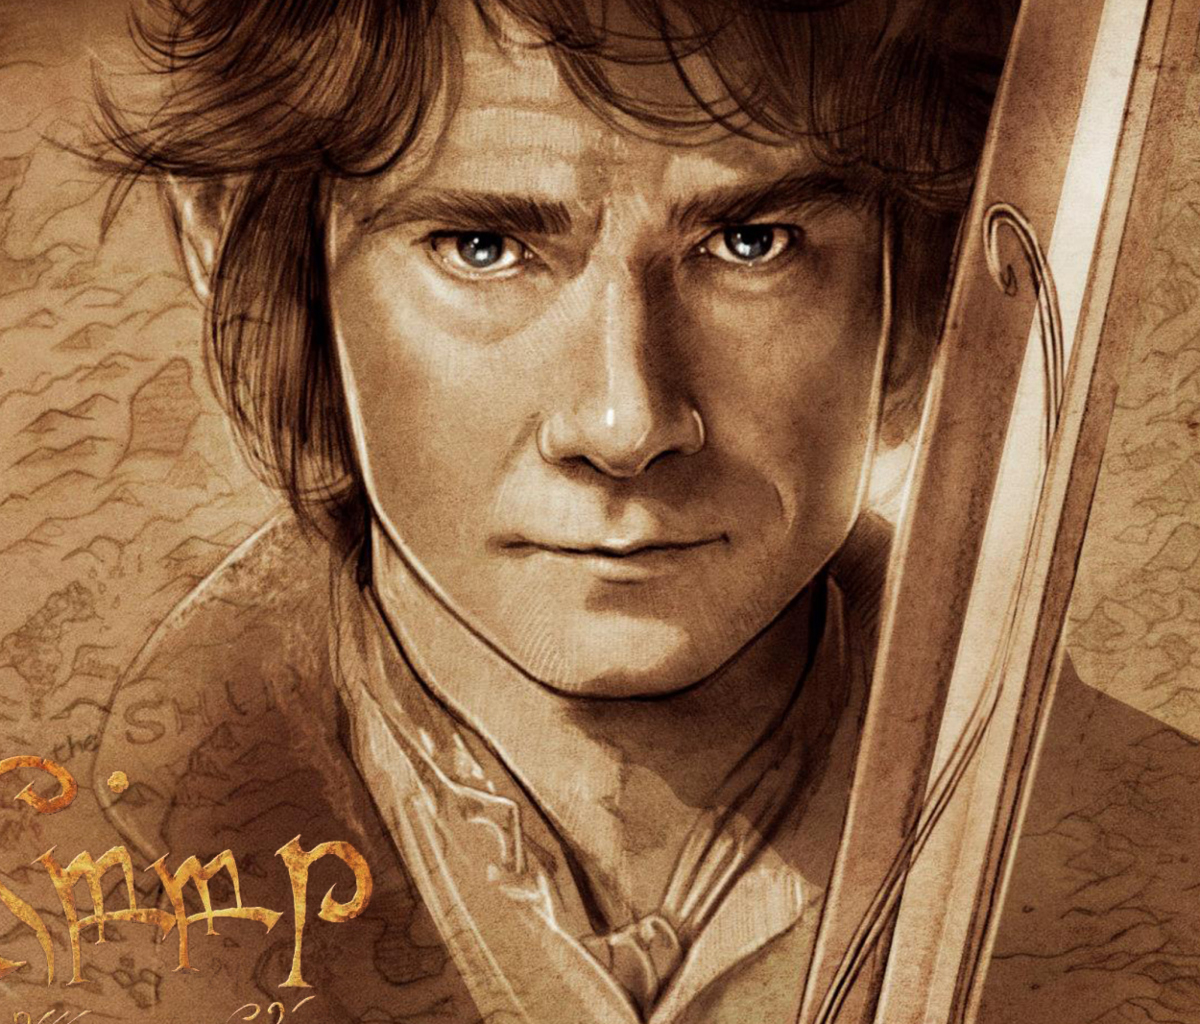 The Hobbit Bilbo Baggins Artwork screenshot #1 1200x1024